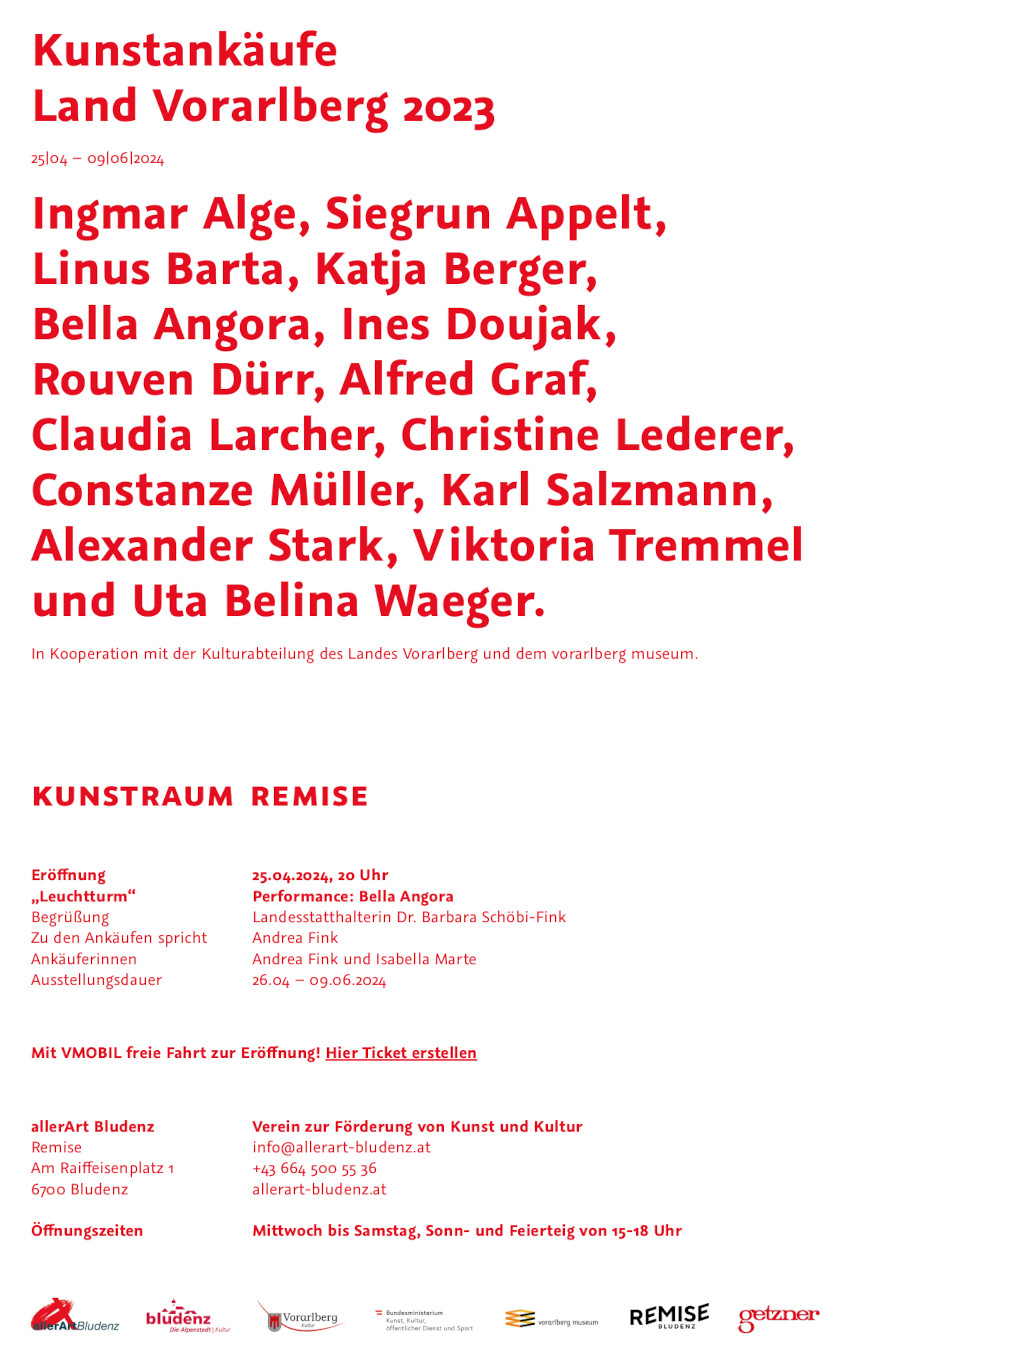 Einladung Kunstankäufe des Landes Vorarlberg 2023 